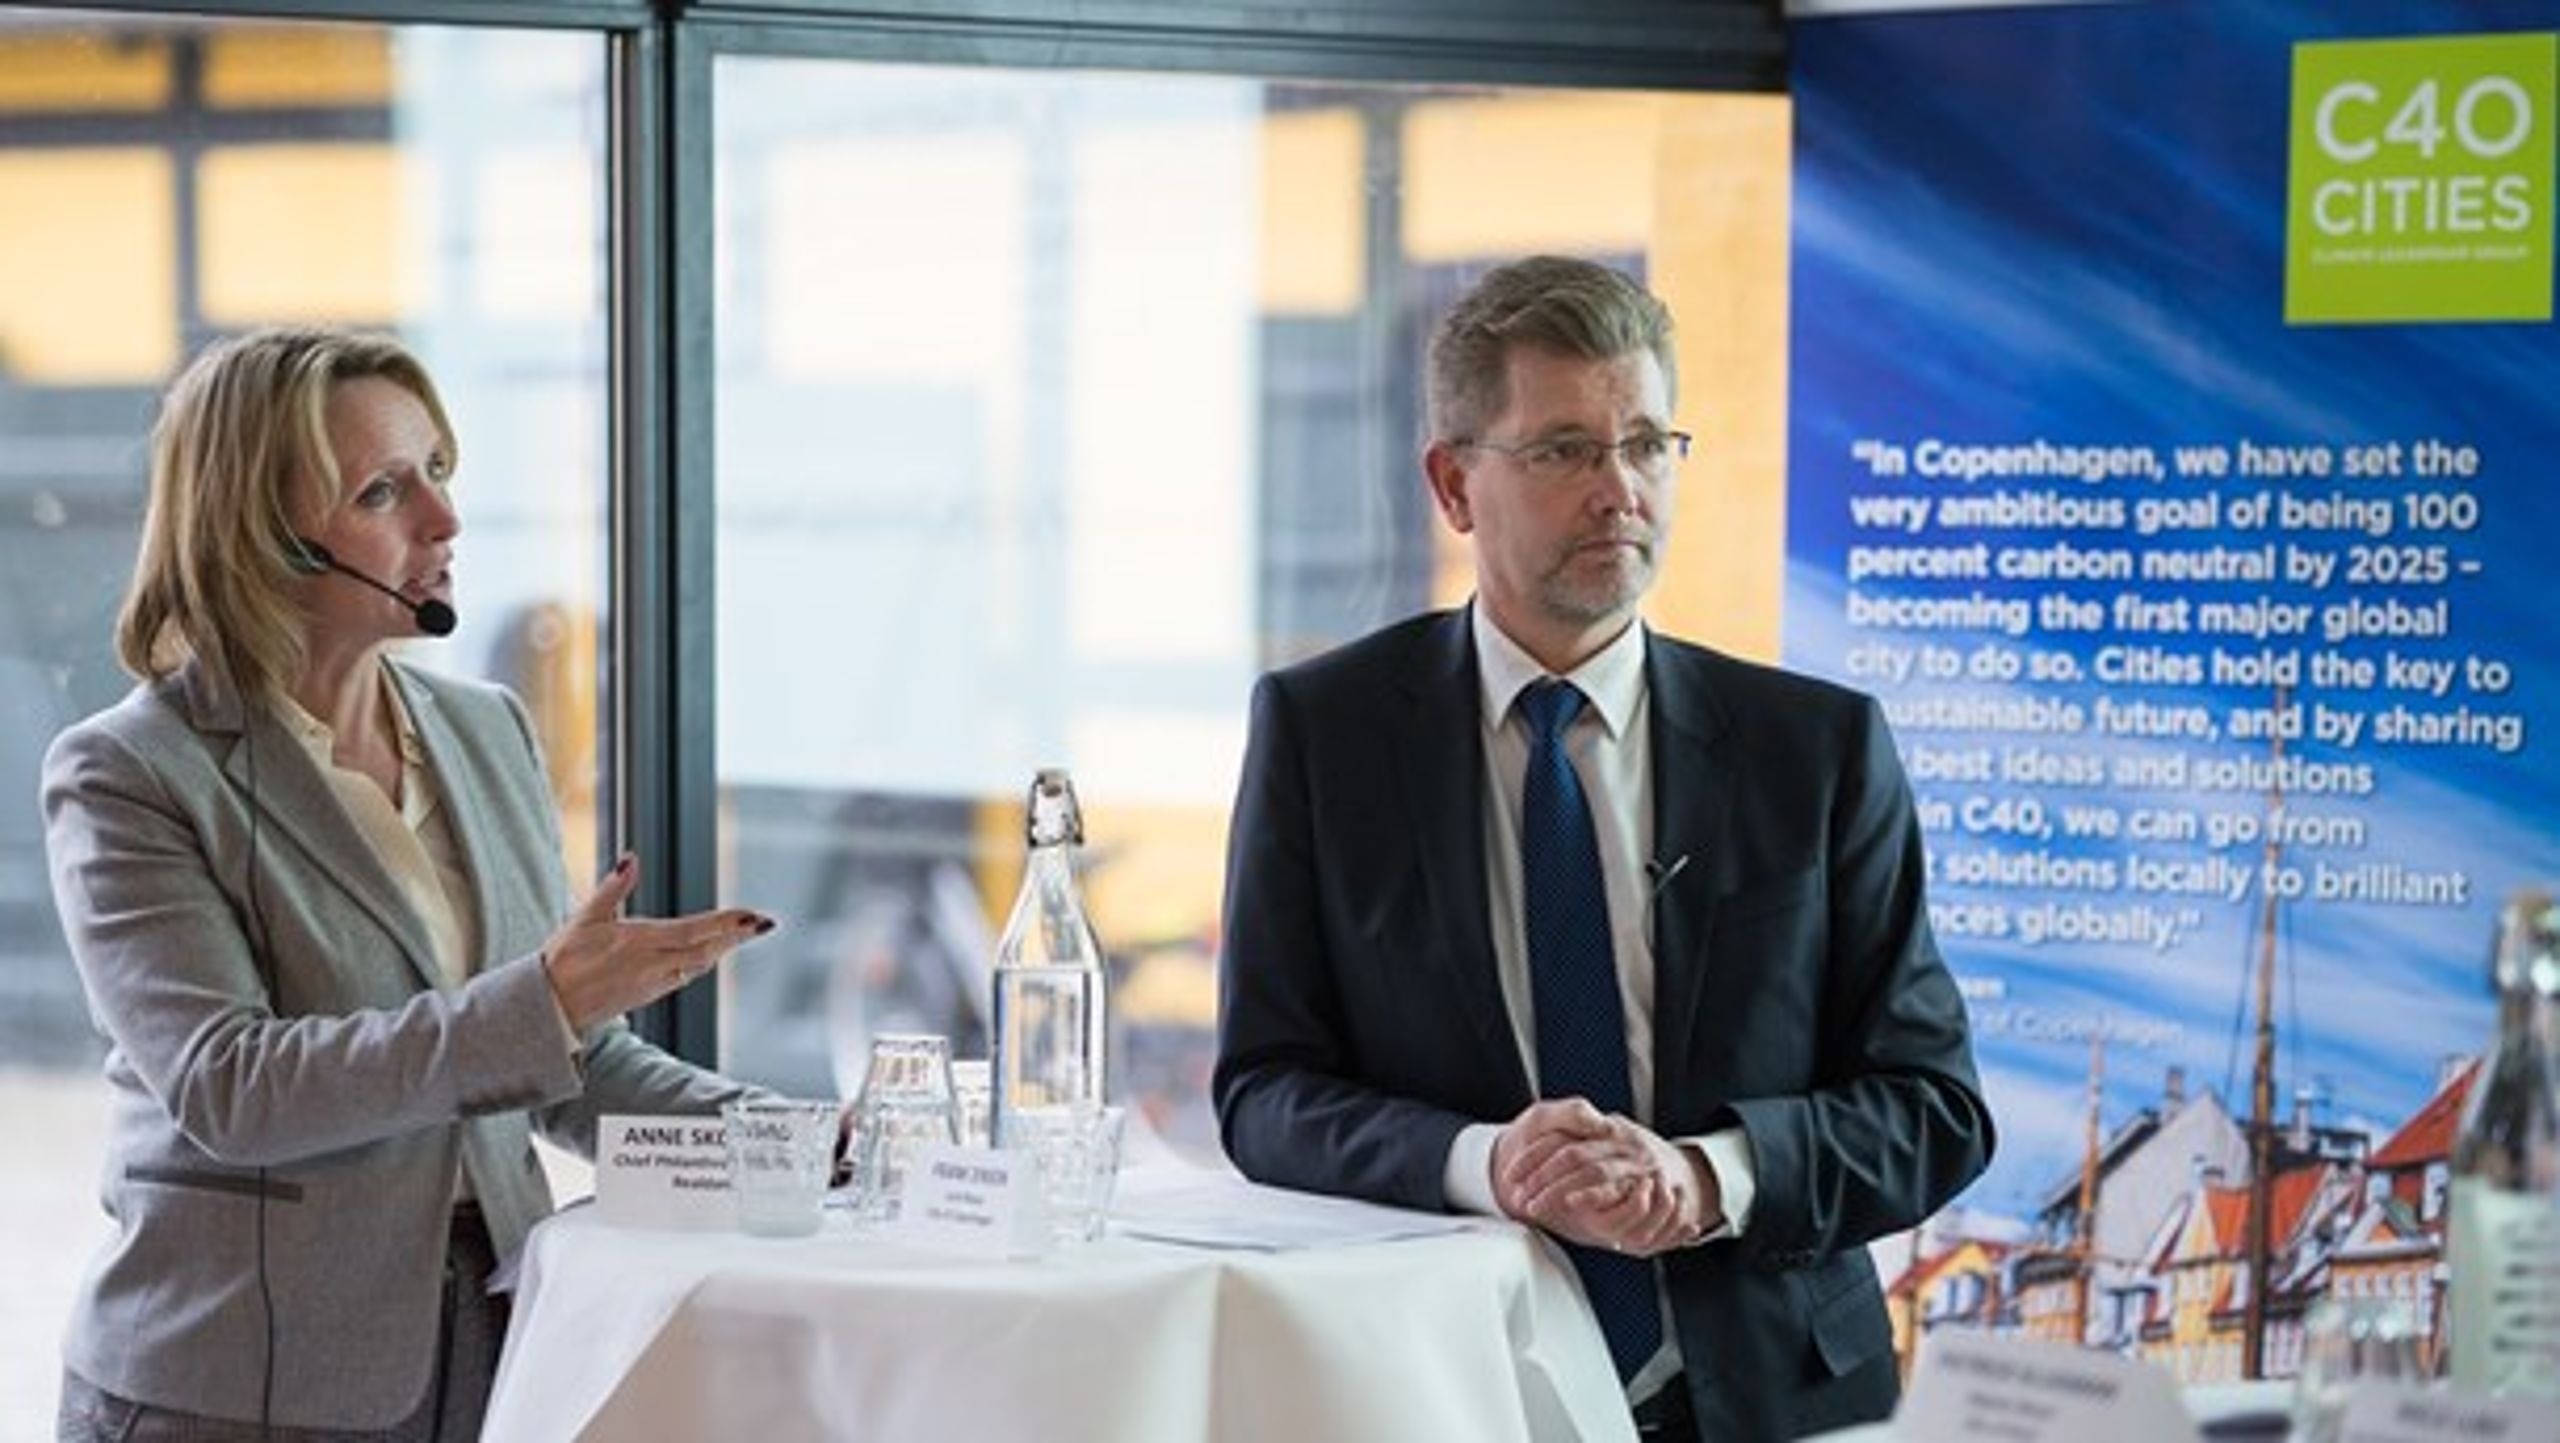 Realdanias filantropichef Anne Skovbro og overborgmester Frank Jensen ved åbningen af C40 Cities' kontor i København.&nbsp;